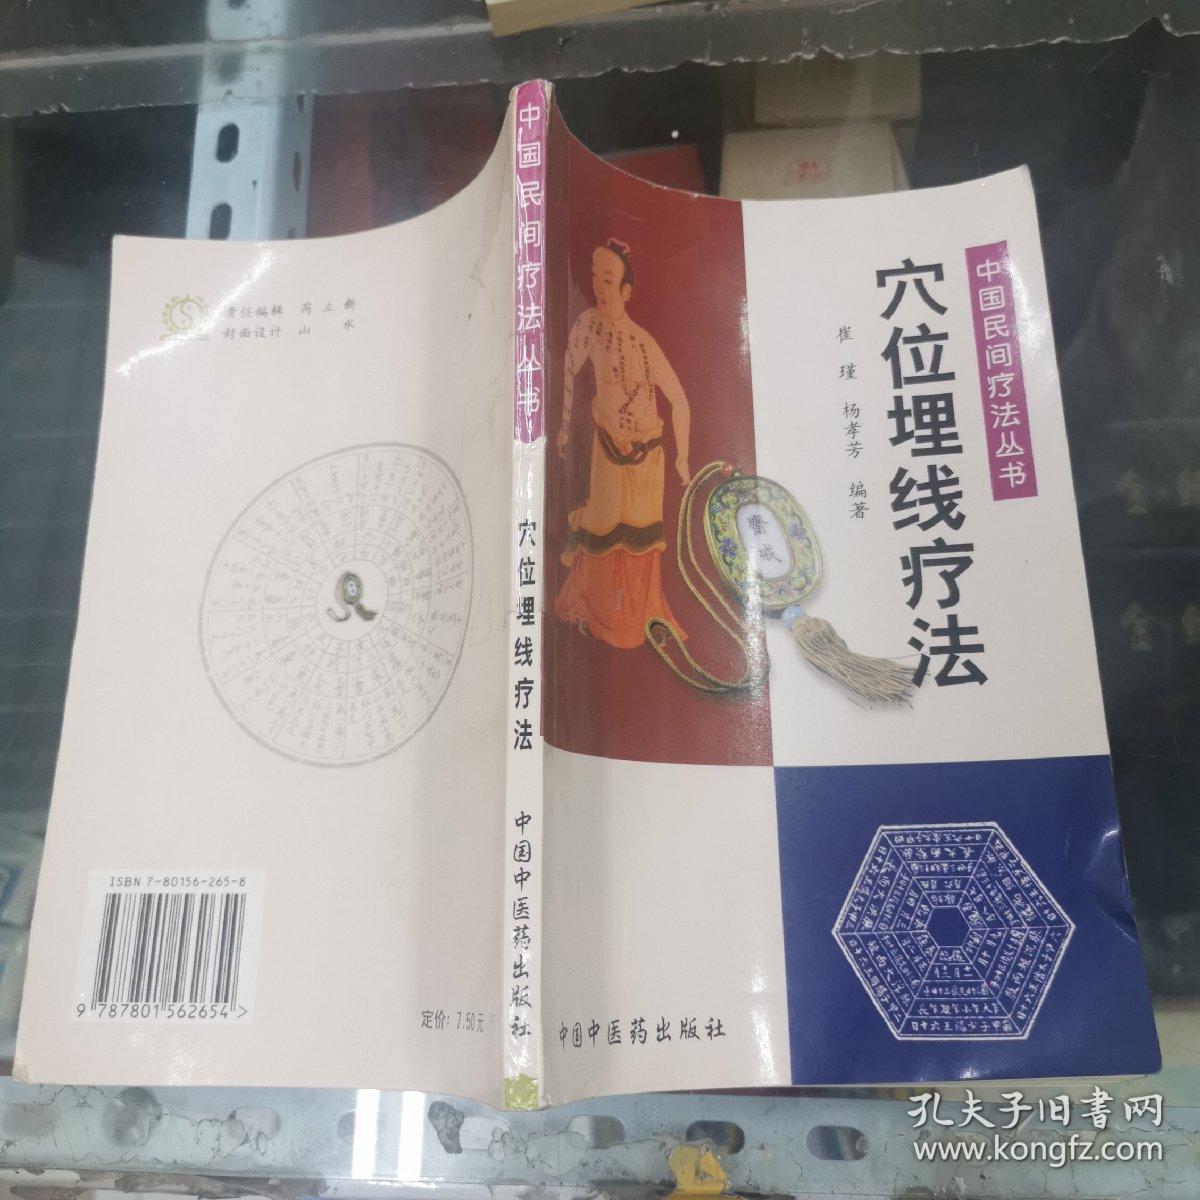 穴位埋线疗法——中国民间疗法丛书  大32开  包邮挂费